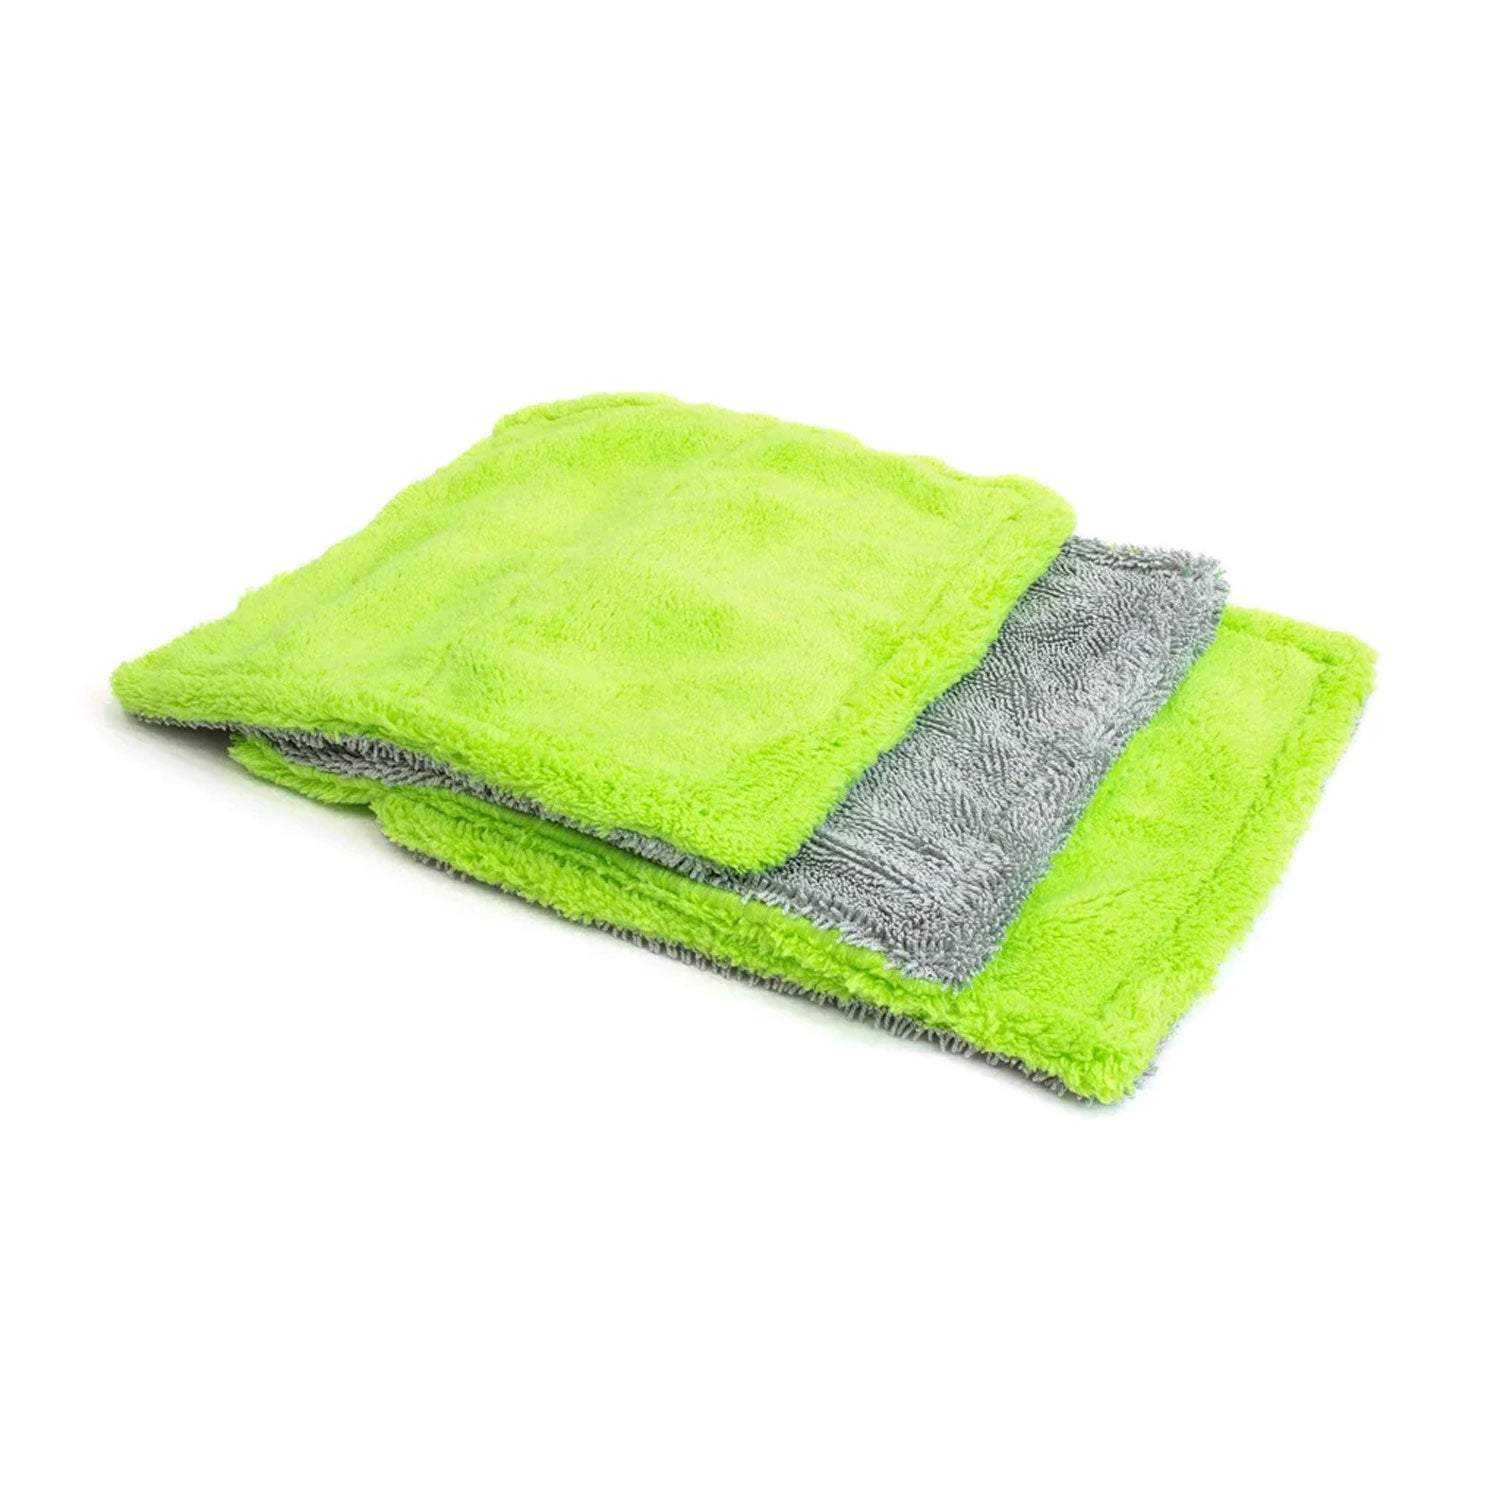 amphibian-plush-drying-towels-3-pack